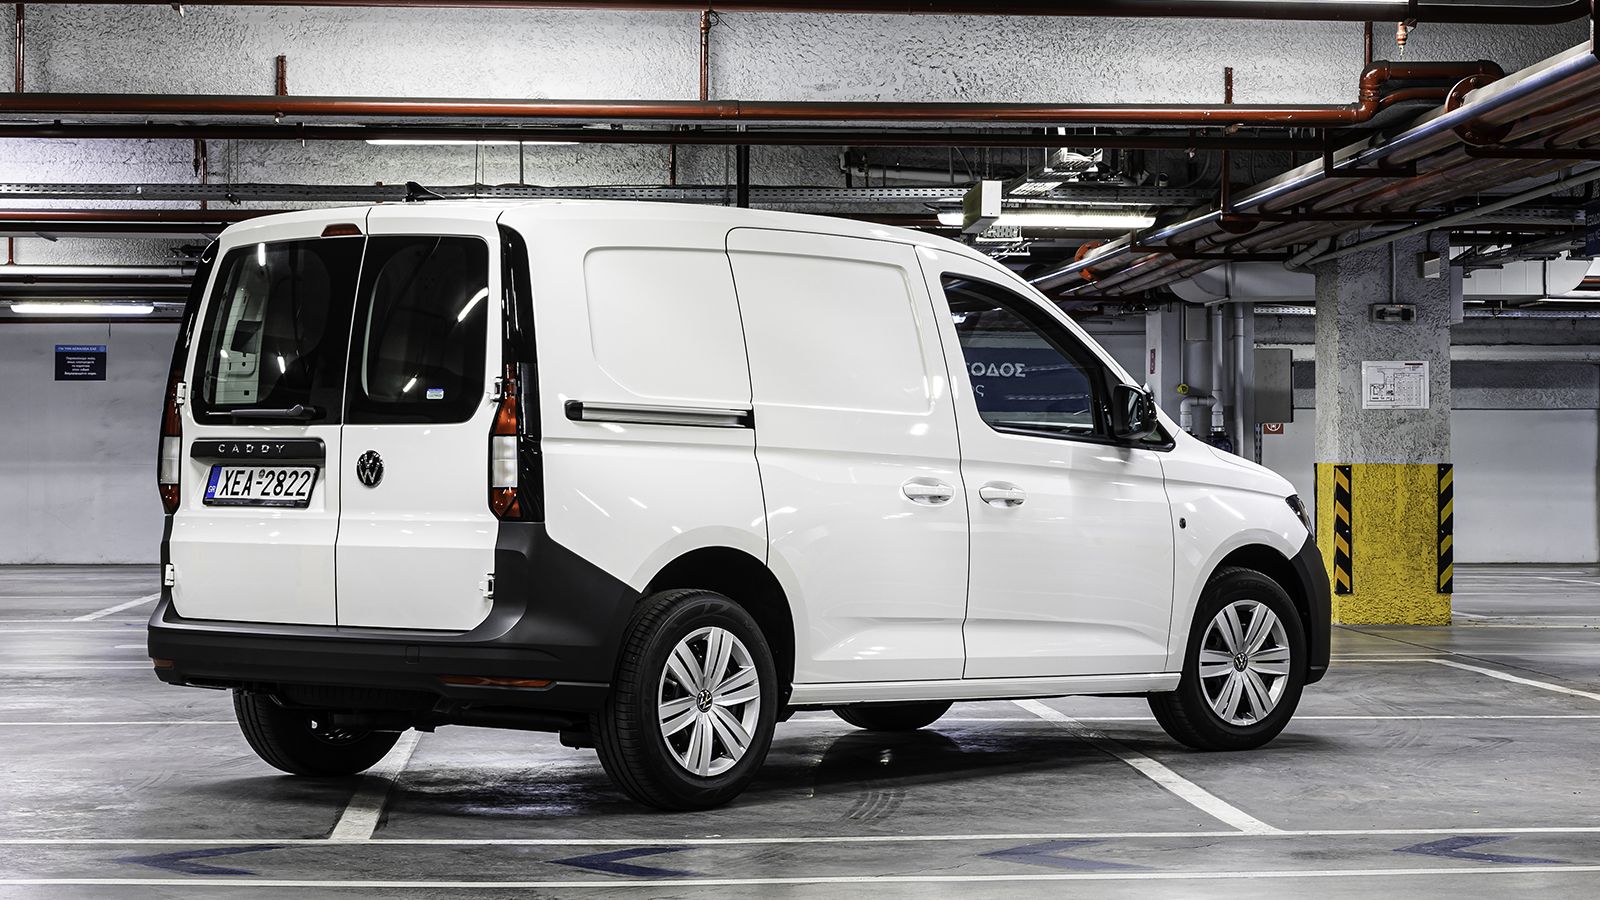 Πλήρες από κάθε άποψη είναι το νέο VW Caddy Van, το οποίο μπορεί να αποκτηθεί και με τα νέα προγράμματα μακροχρόνιας μίσθωσης της εταιρείας.